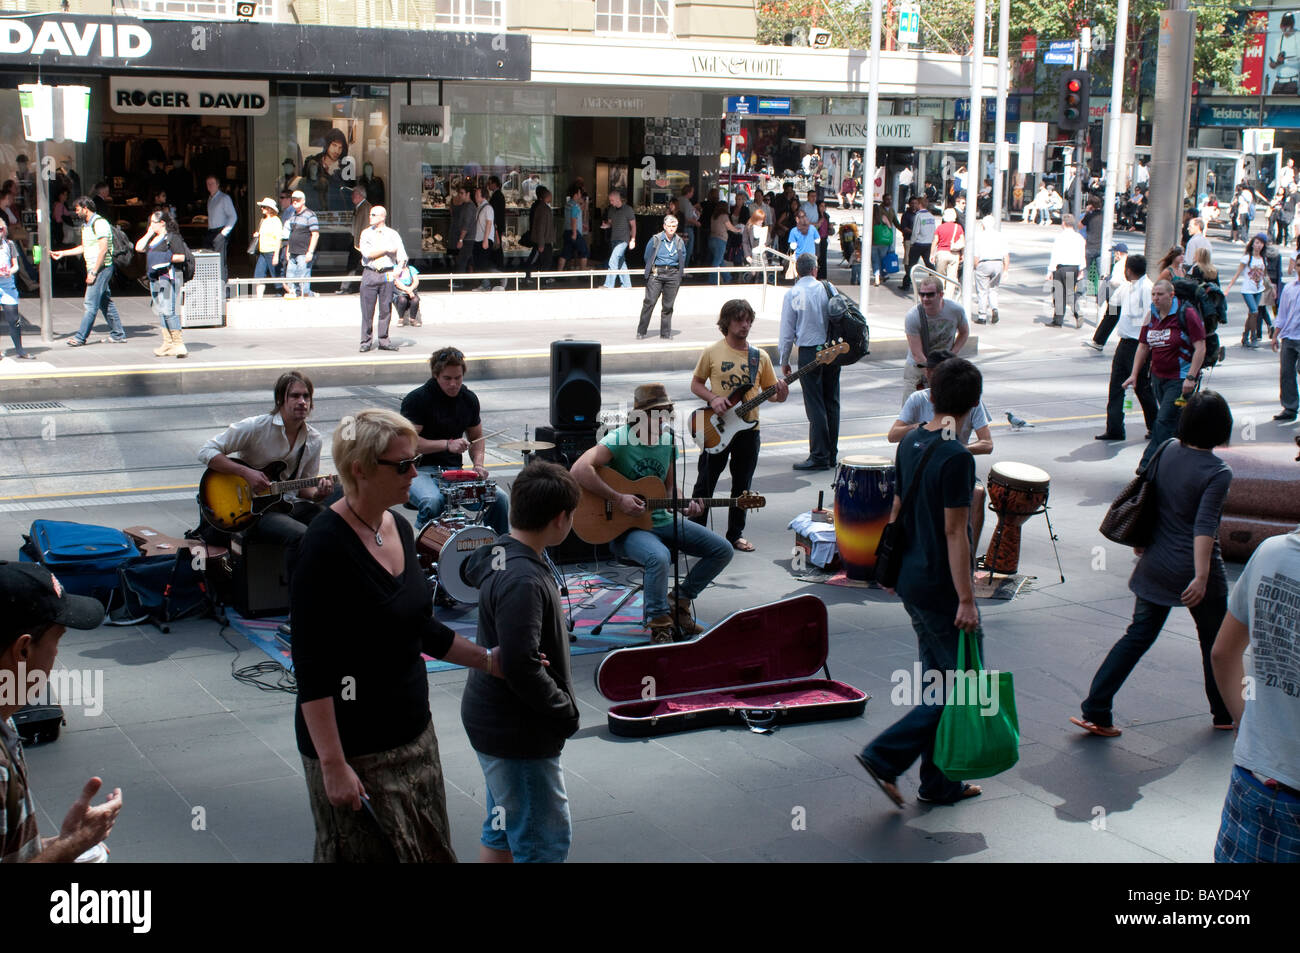 Groupe jouant sur Bourke Street Mall, Melbourne, Victoria Australie Banque D'Images